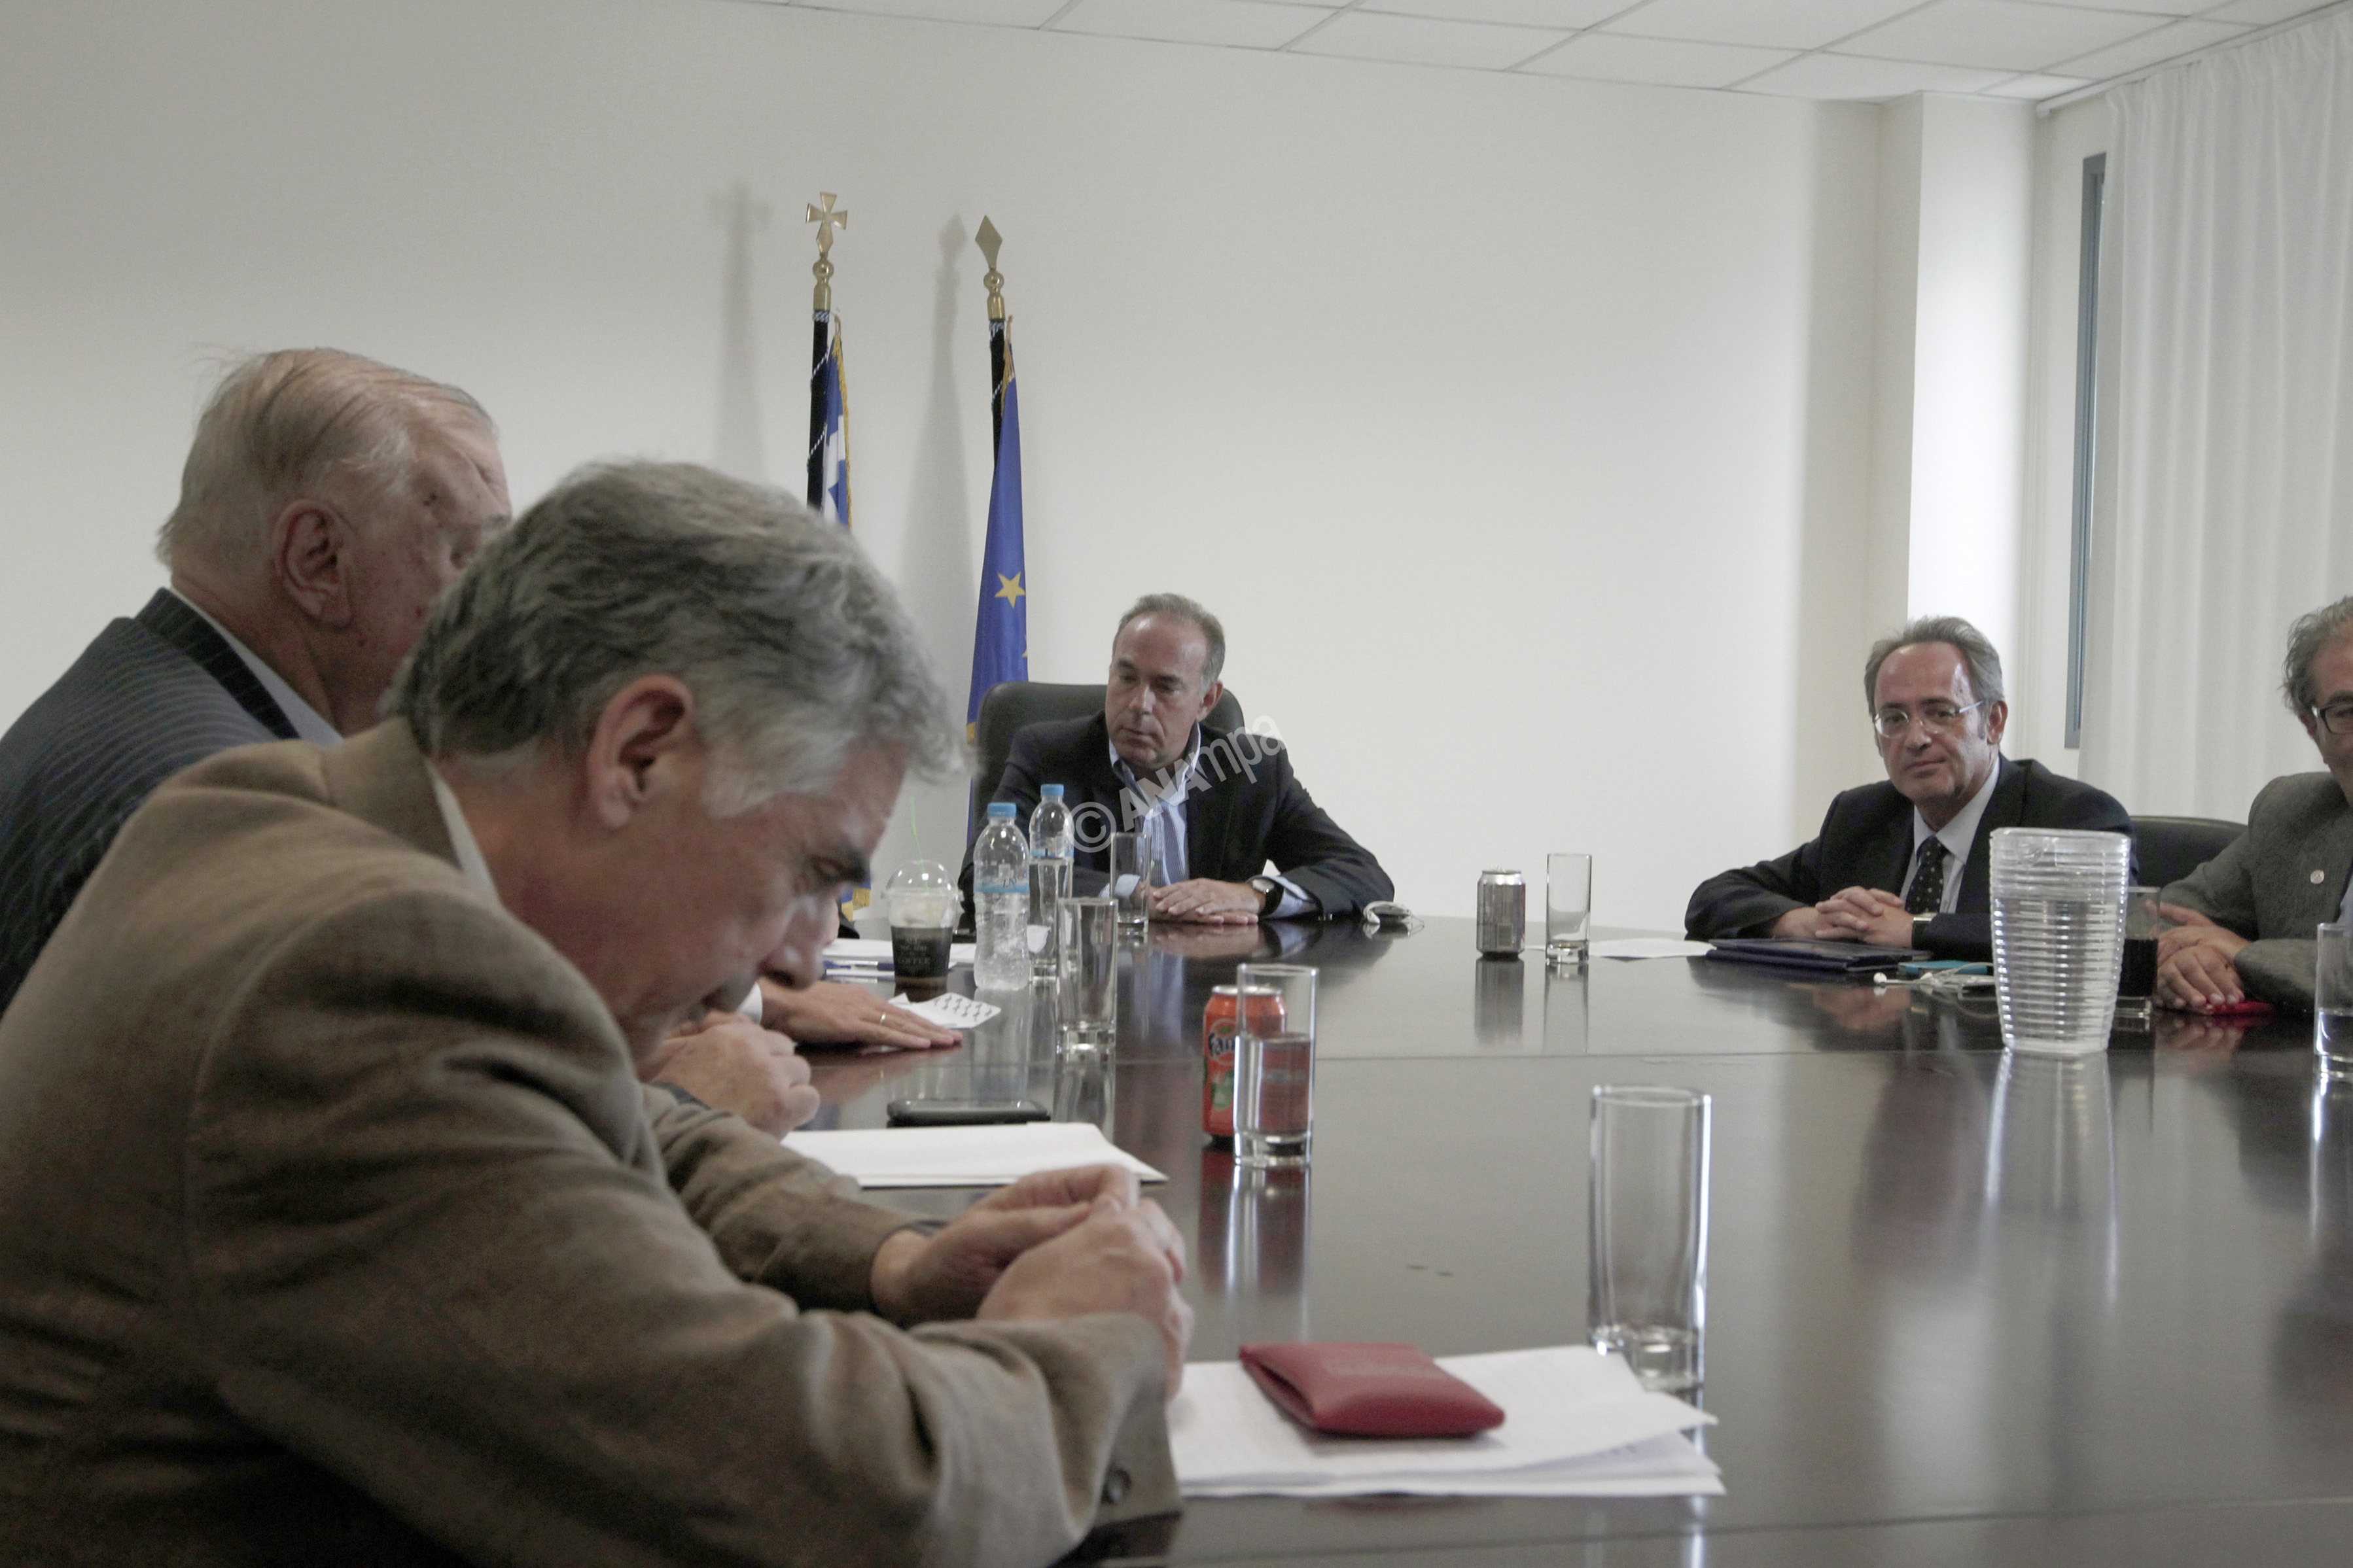 Ο  υπουργός Παιδείας Κωνσταντίνος Αρβανιτόπουλος (Κ) συναντήθηκε  με τους πρυτάνεις , την  Παρασκευή 13 Σεπτεμβρίου 2013, στο  Υπουργείο. ΑΠΕ-ΜΠΕ/ΑΠΕ-ΜΠΕ/ΑΛΚΗΣ ΚΩΝΣΤΑΝΤΙΝΙΔΗΣ